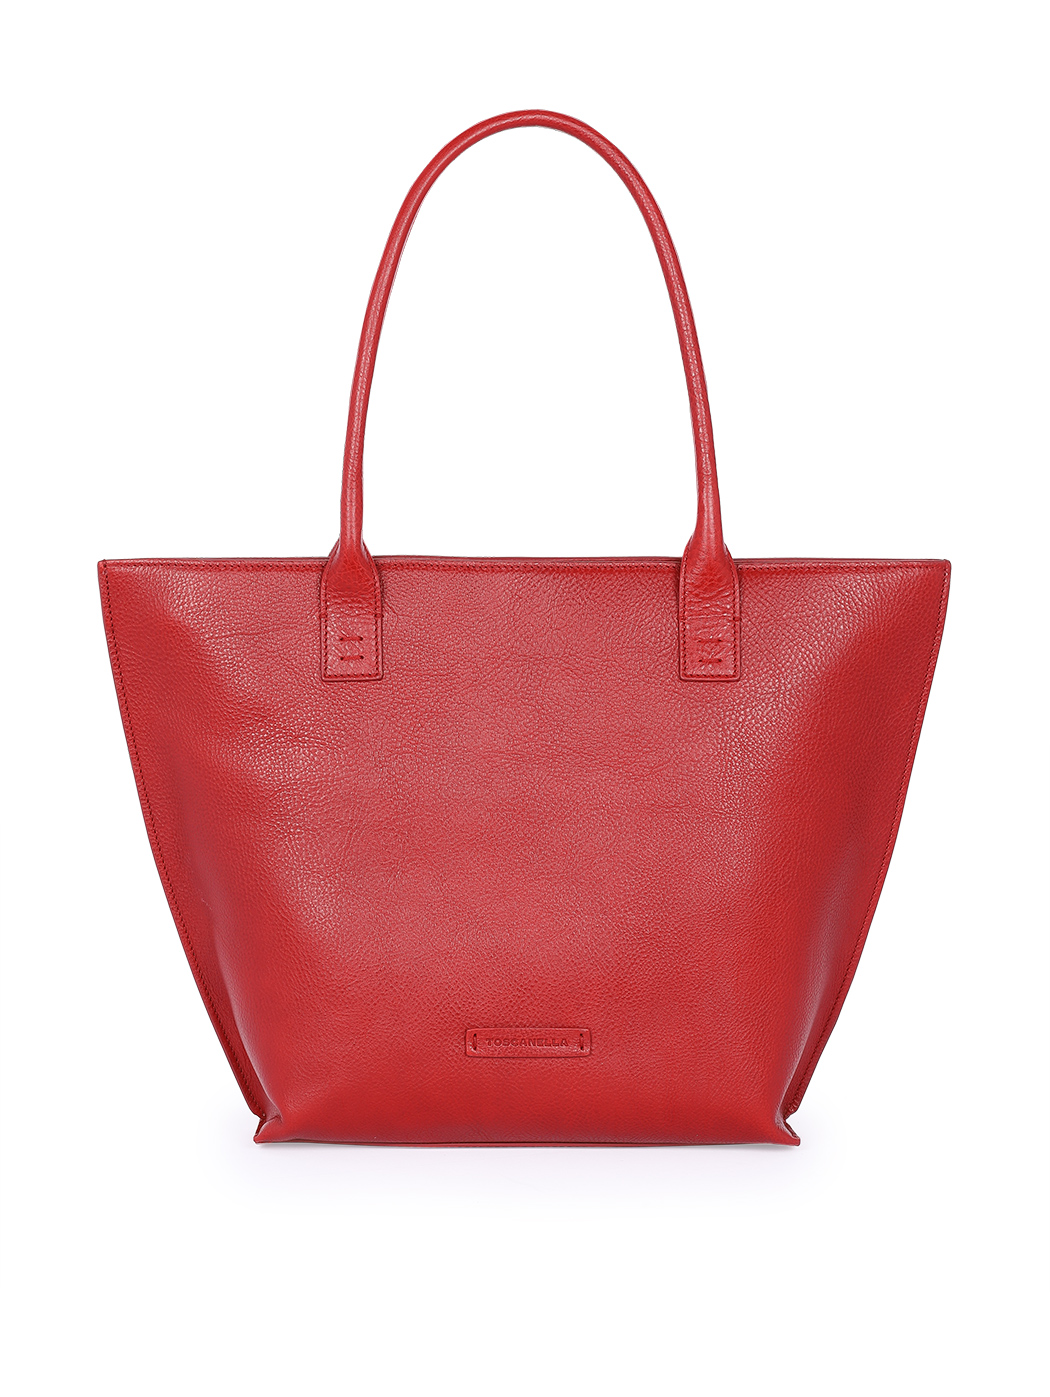 Bucket Zip Top Tote Handbag Red